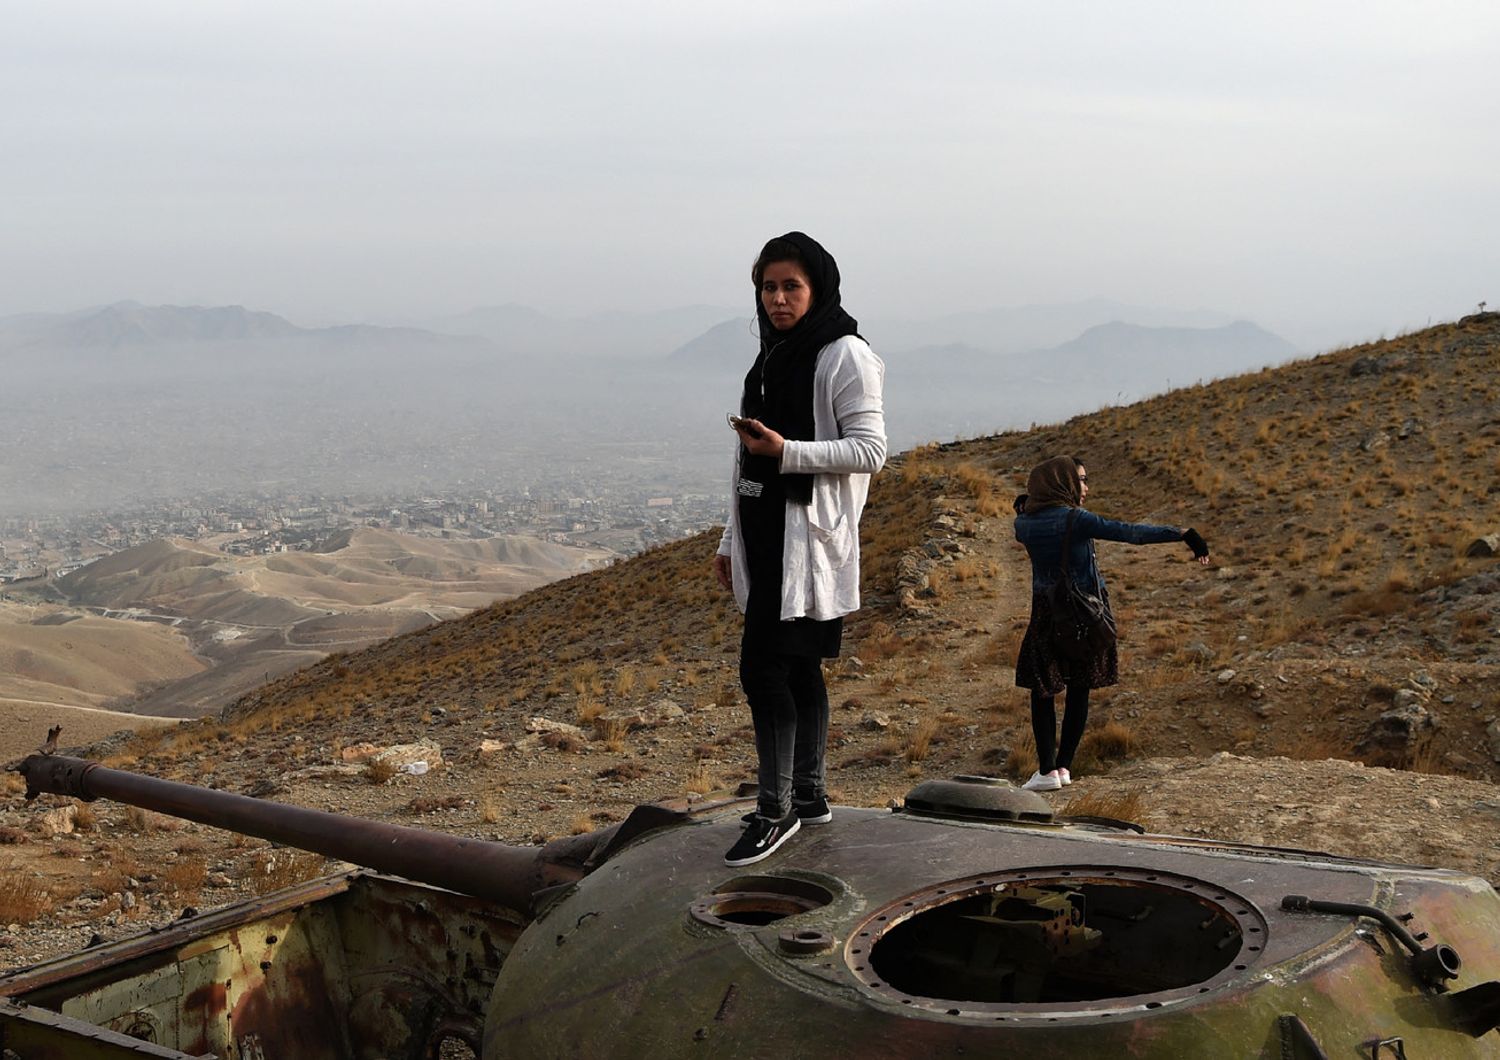 Una ragazza sulla carcassa di un carro armato russo in Afghanistan